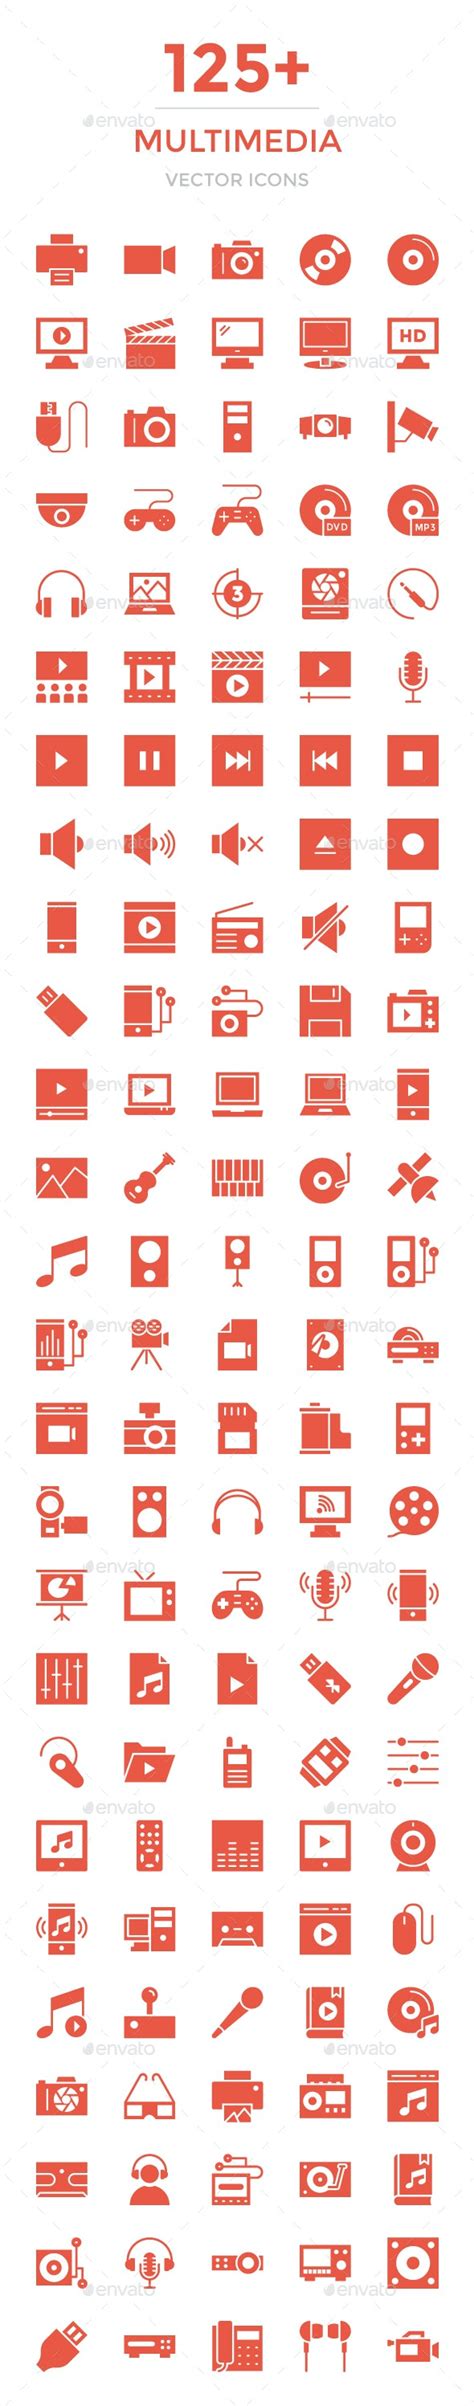 125 Multimedia Vector Icons By Vectorsmarket Graphicriver